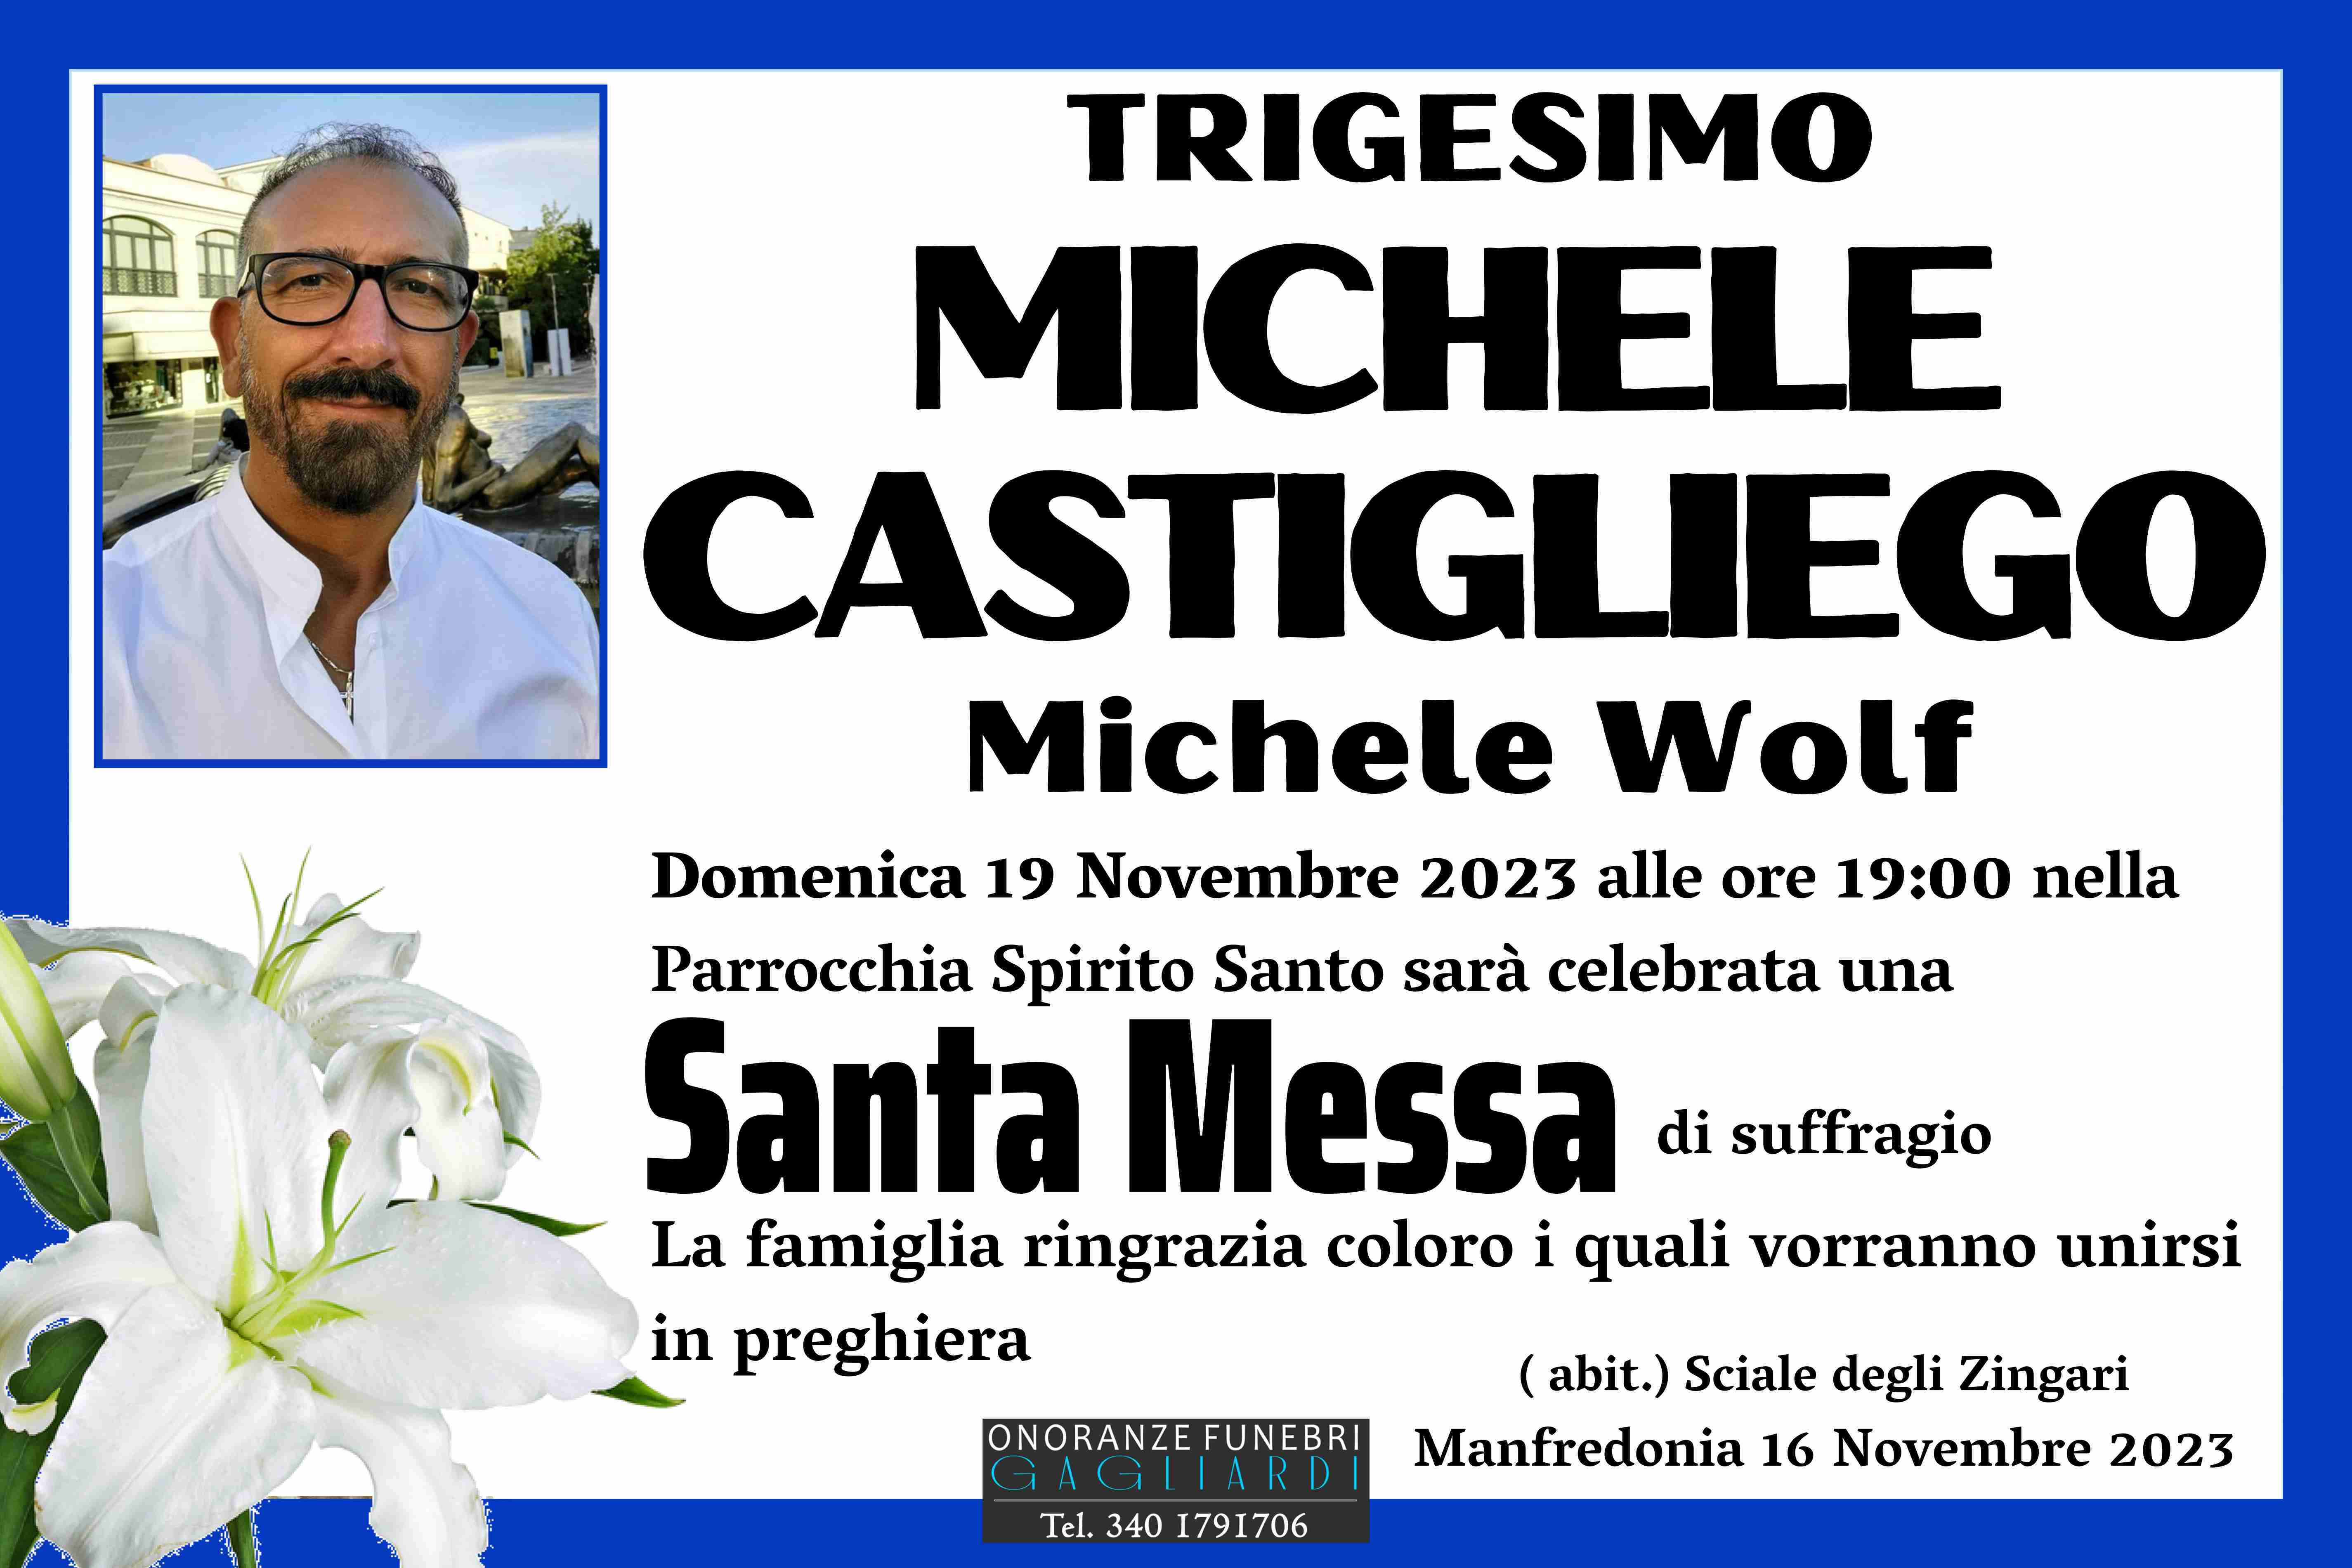 Michele Castigliego